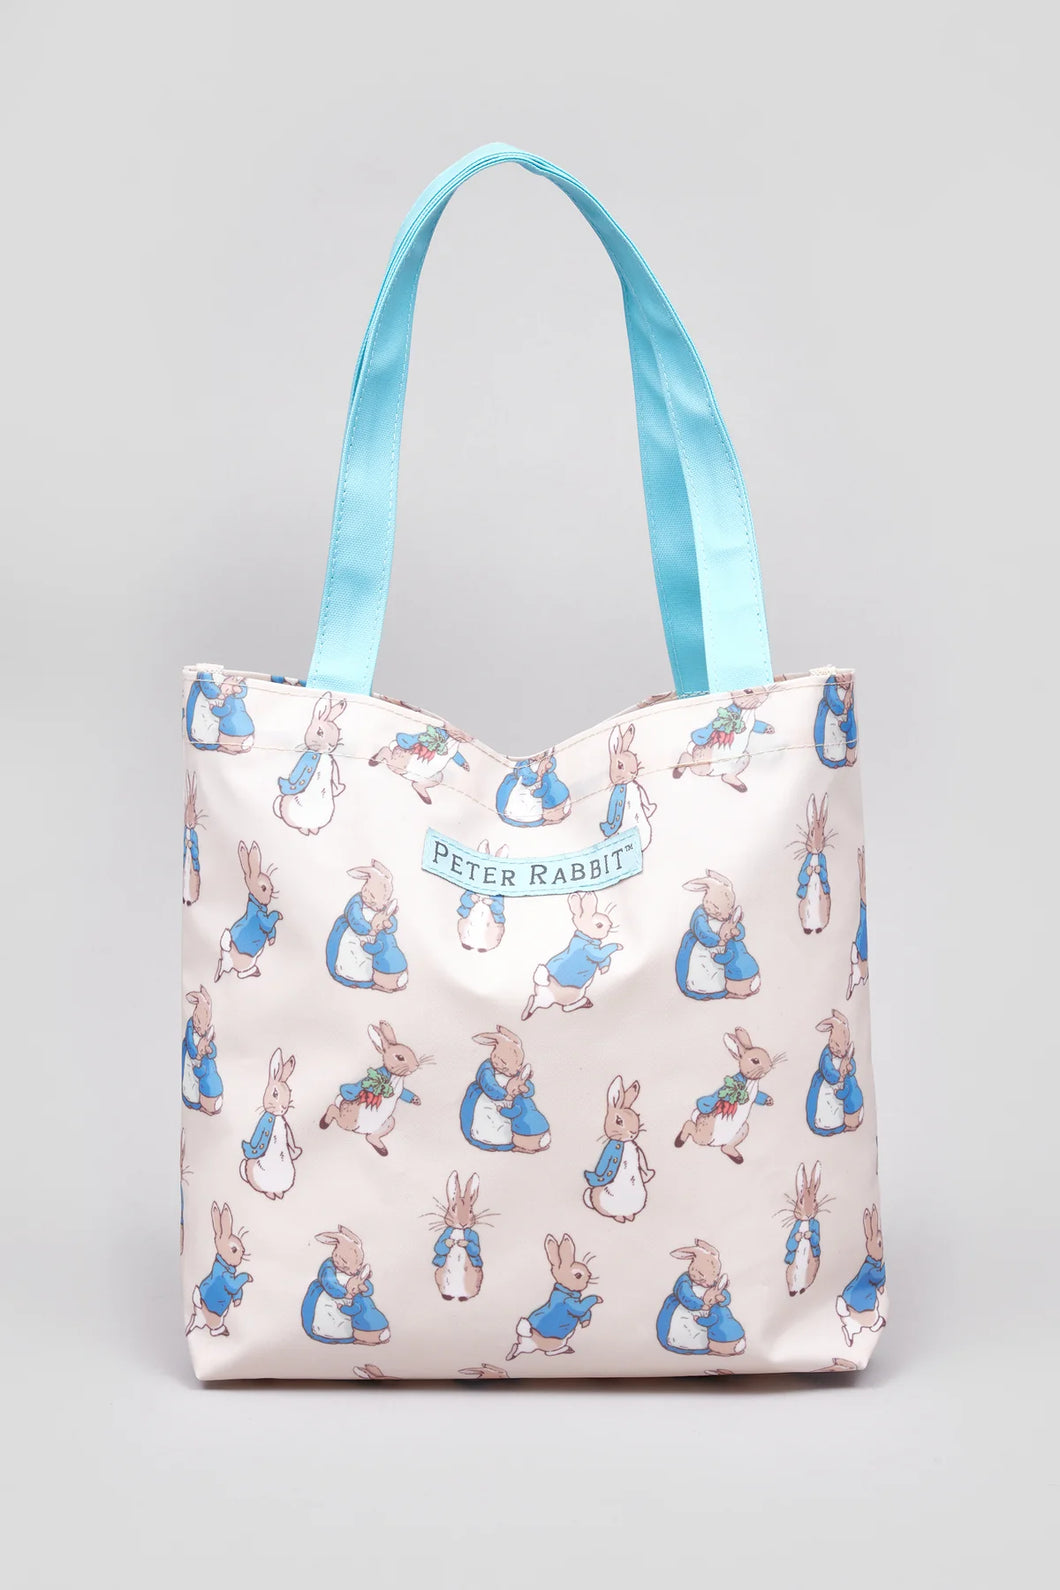 Peter Rabbit tote bag